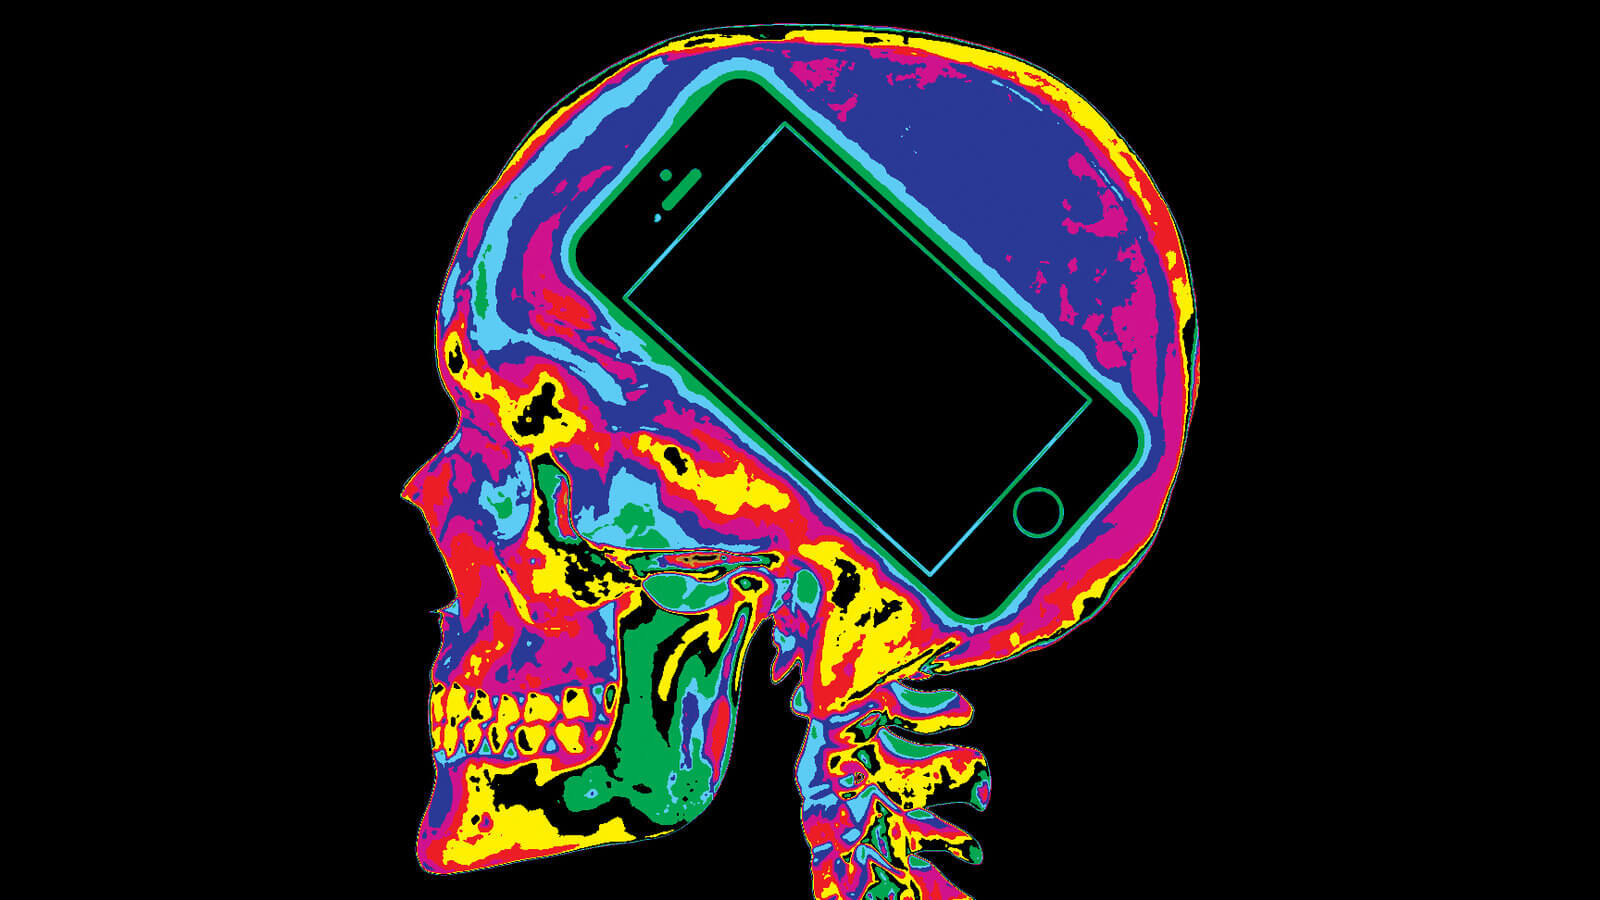 Влияние цифровых технологий на мозг молодых людей. Тотальная цифровизация имеет свои плюсы и минусы для здоровья не только мозга, но и всего организма. Фото.